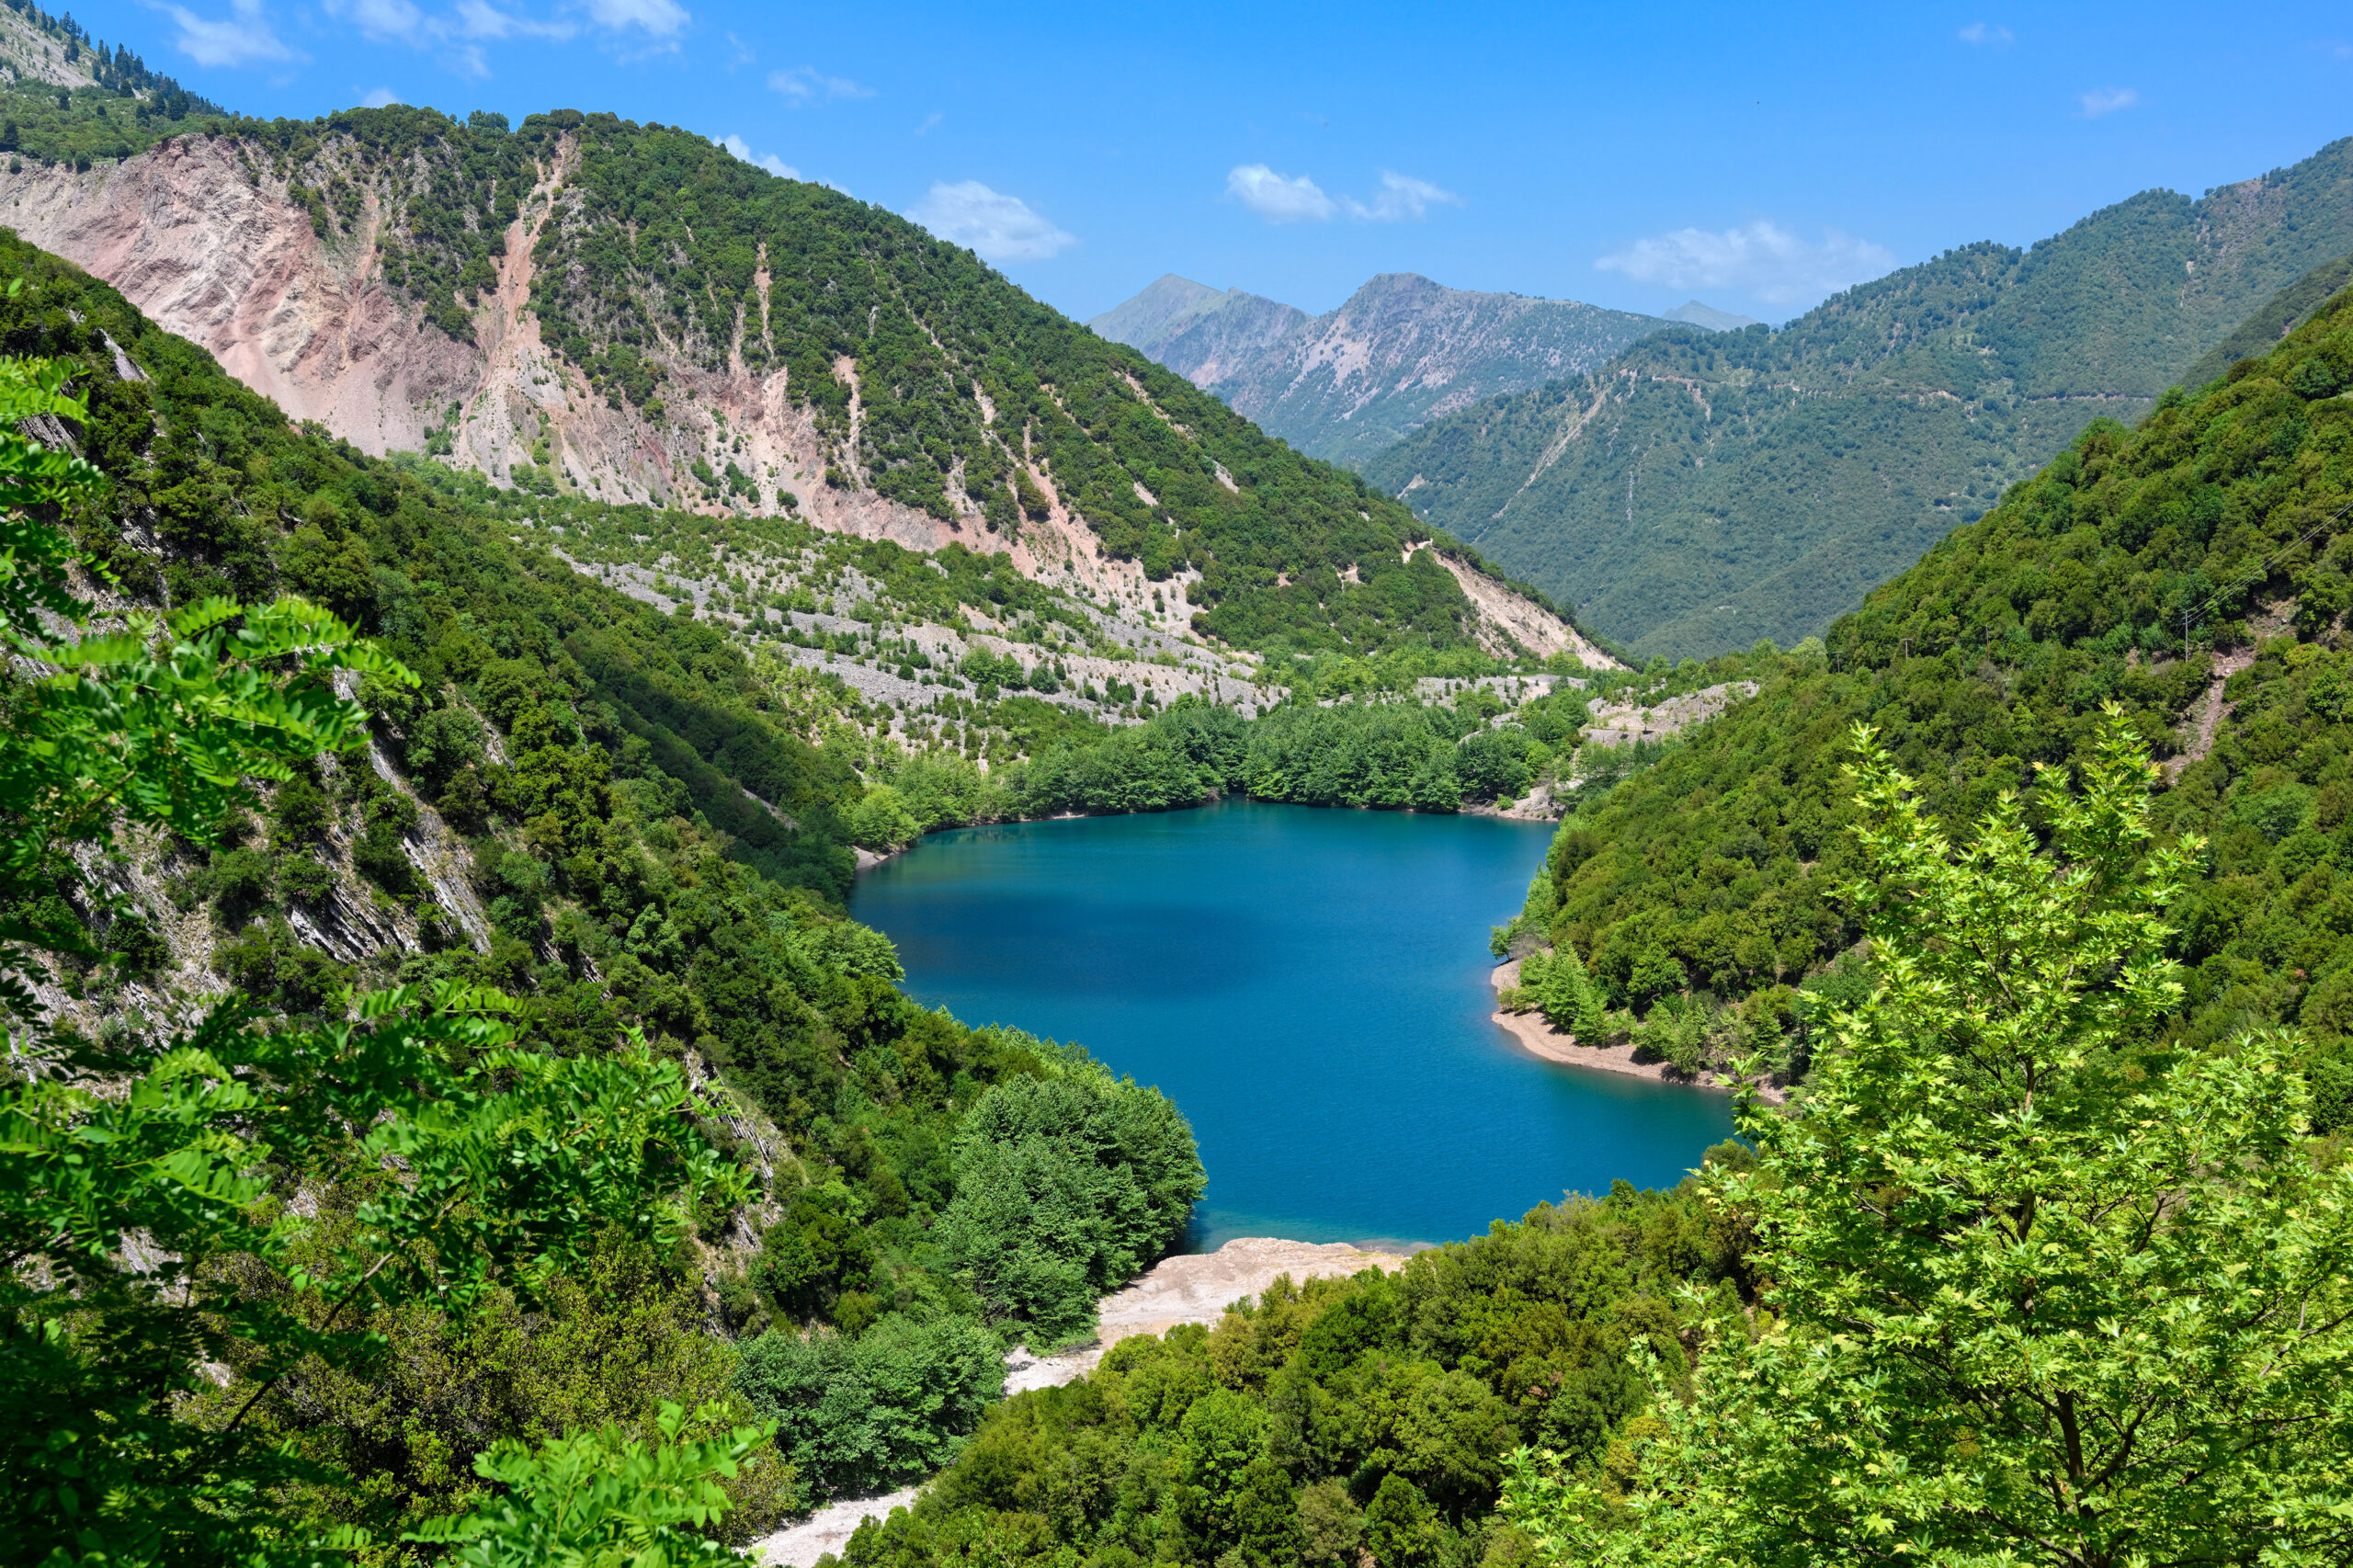 Στεφανιάδα: Ο κρυμμένος παράδεισος της νεότερης φυσικής λίμνης στην Ελλάδα | travel.gr